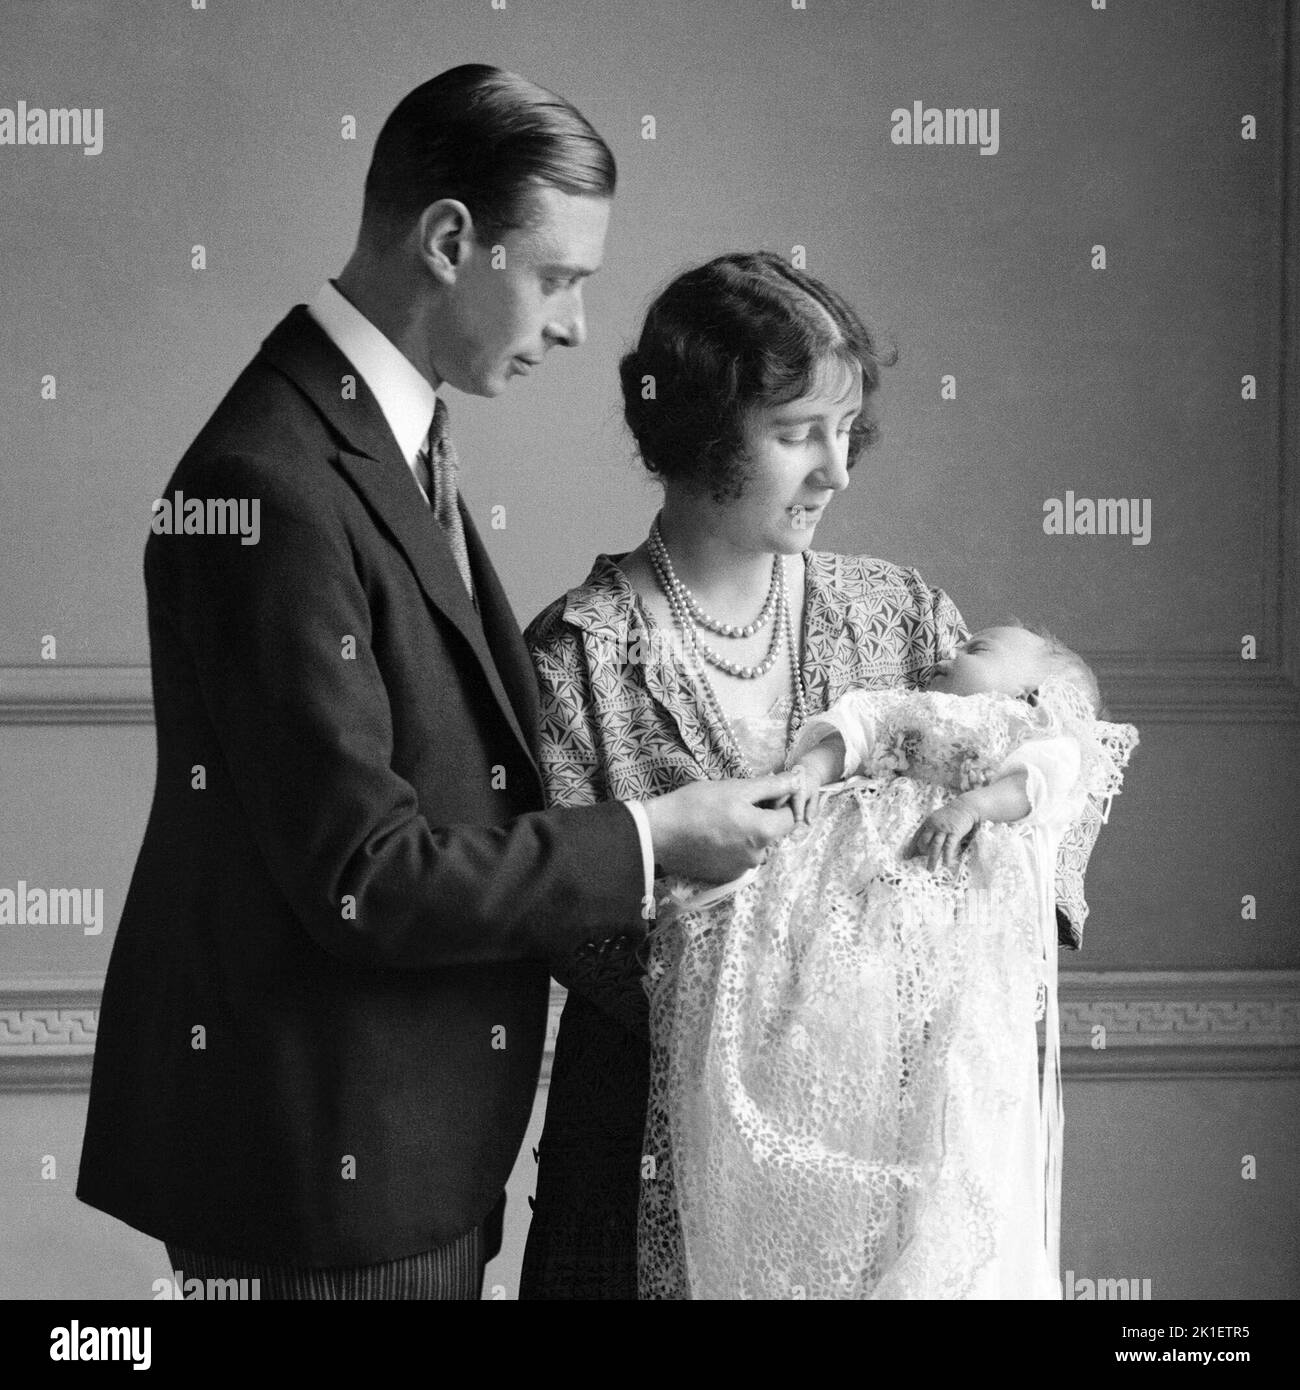 Foto de archivo fechada el 01/05/1926 de la Reina Madre (entonces la Duquesa de York) con su marido, el rey Jorge VI (entonces el duque de York), y su hija la princesa Isabel (ahora reina Isabel II) en su bautizo. Fecha de emisión: Domingo 18 de Septiembre de 2022.. El crédito de la foto debe decir: PA Wire Foto de stock